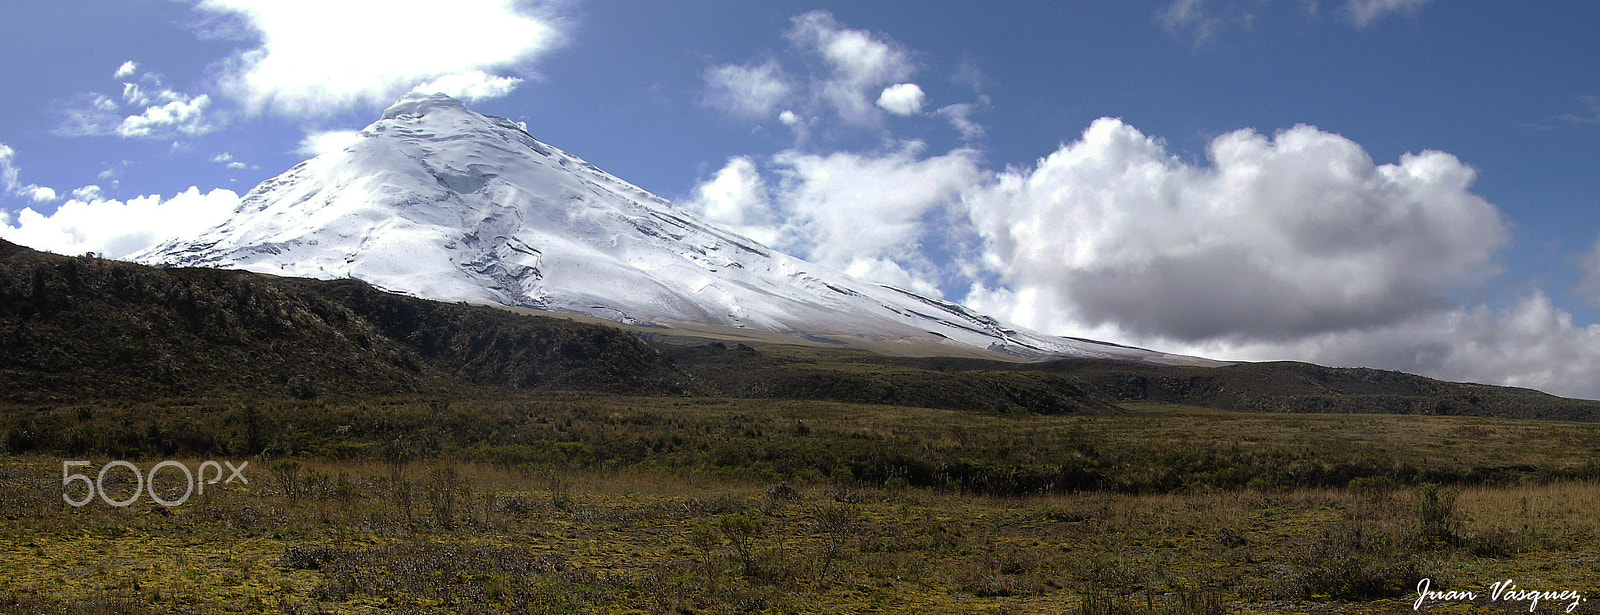 Nikon E8700 sample photo. Panoramica  volcan cotopaxi photography